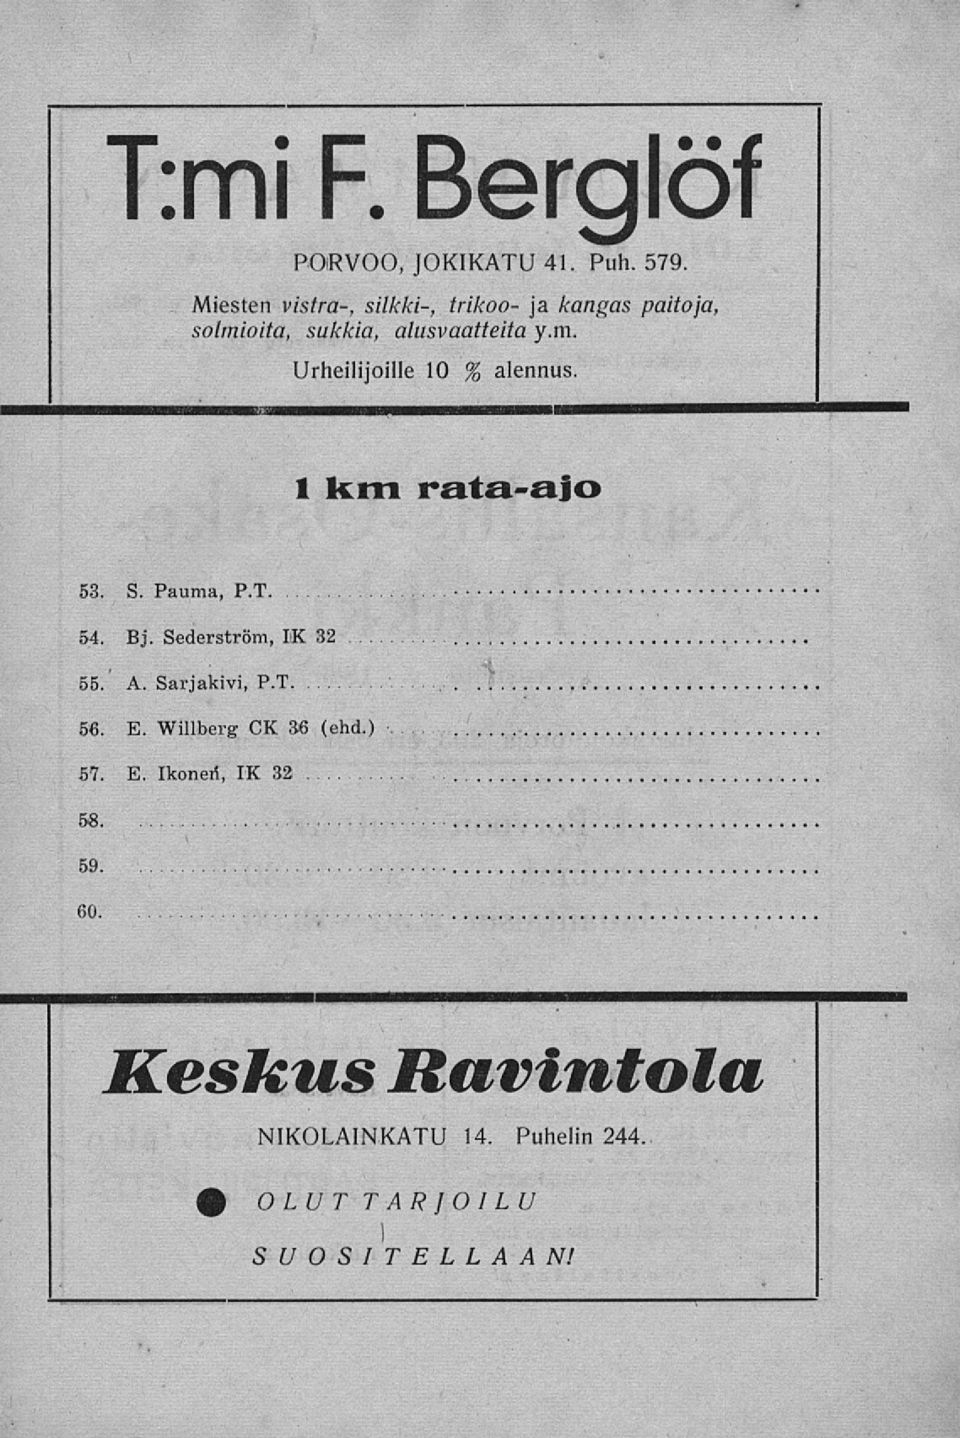 1 km rata-ajo 53. S. Pauma, P.T. 54. Bj. Sederström, IX 32... 55.' A. Sarjakivi, P.T 56. E.